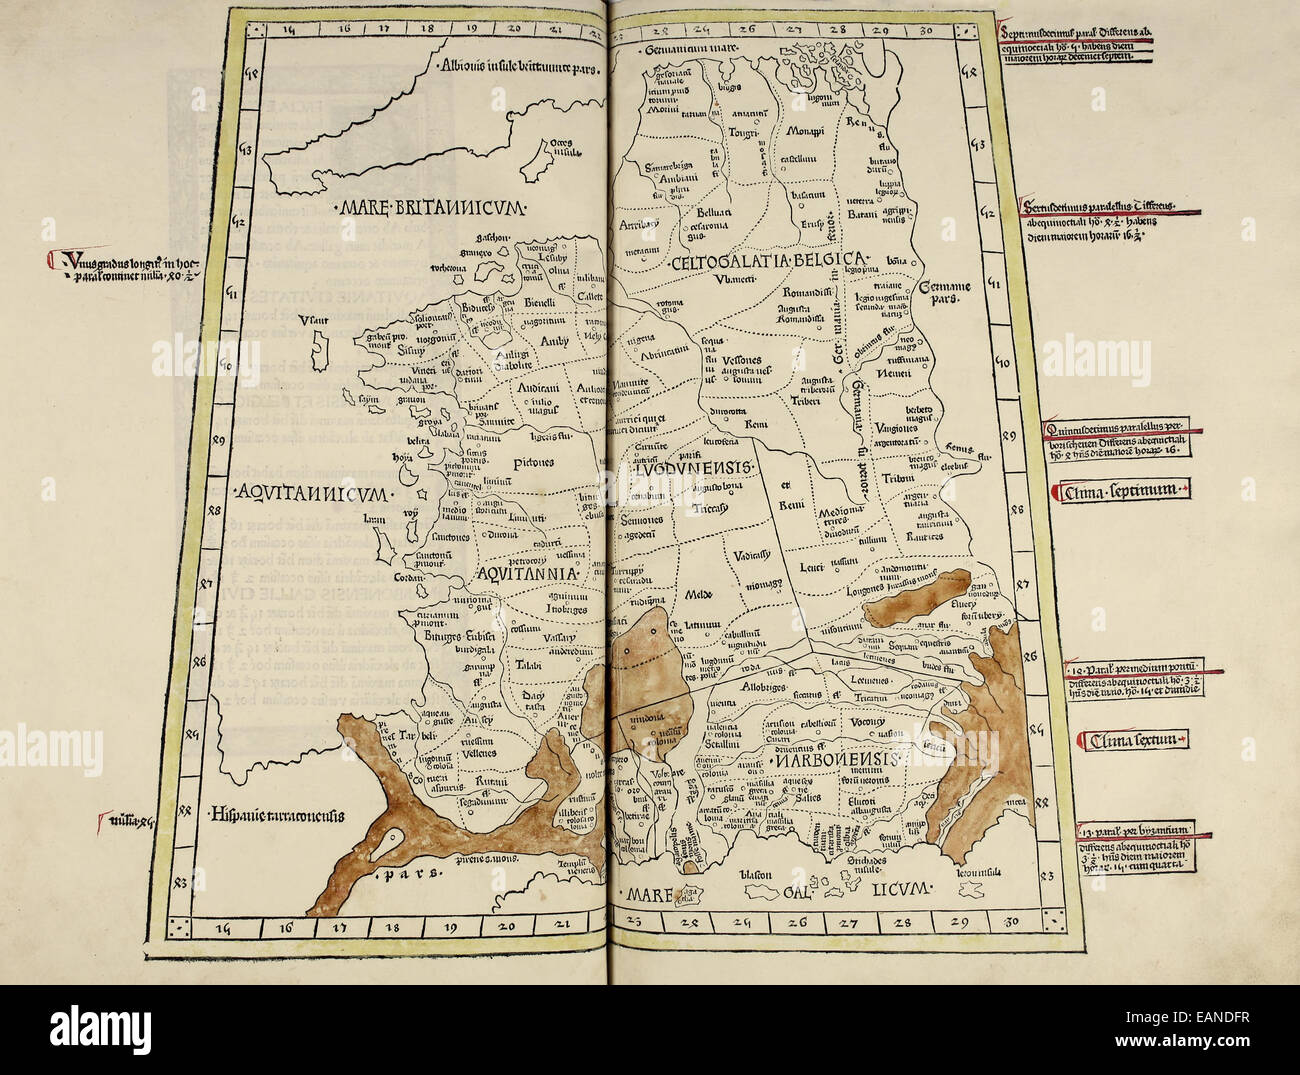 Karte von Belgien & Frankreich von "Cosmographia" von Claudius Ptolemäus (Ptolemaeus) (90-168AD). Siehe Beschreibung für mehr Informationen. Stockfoto